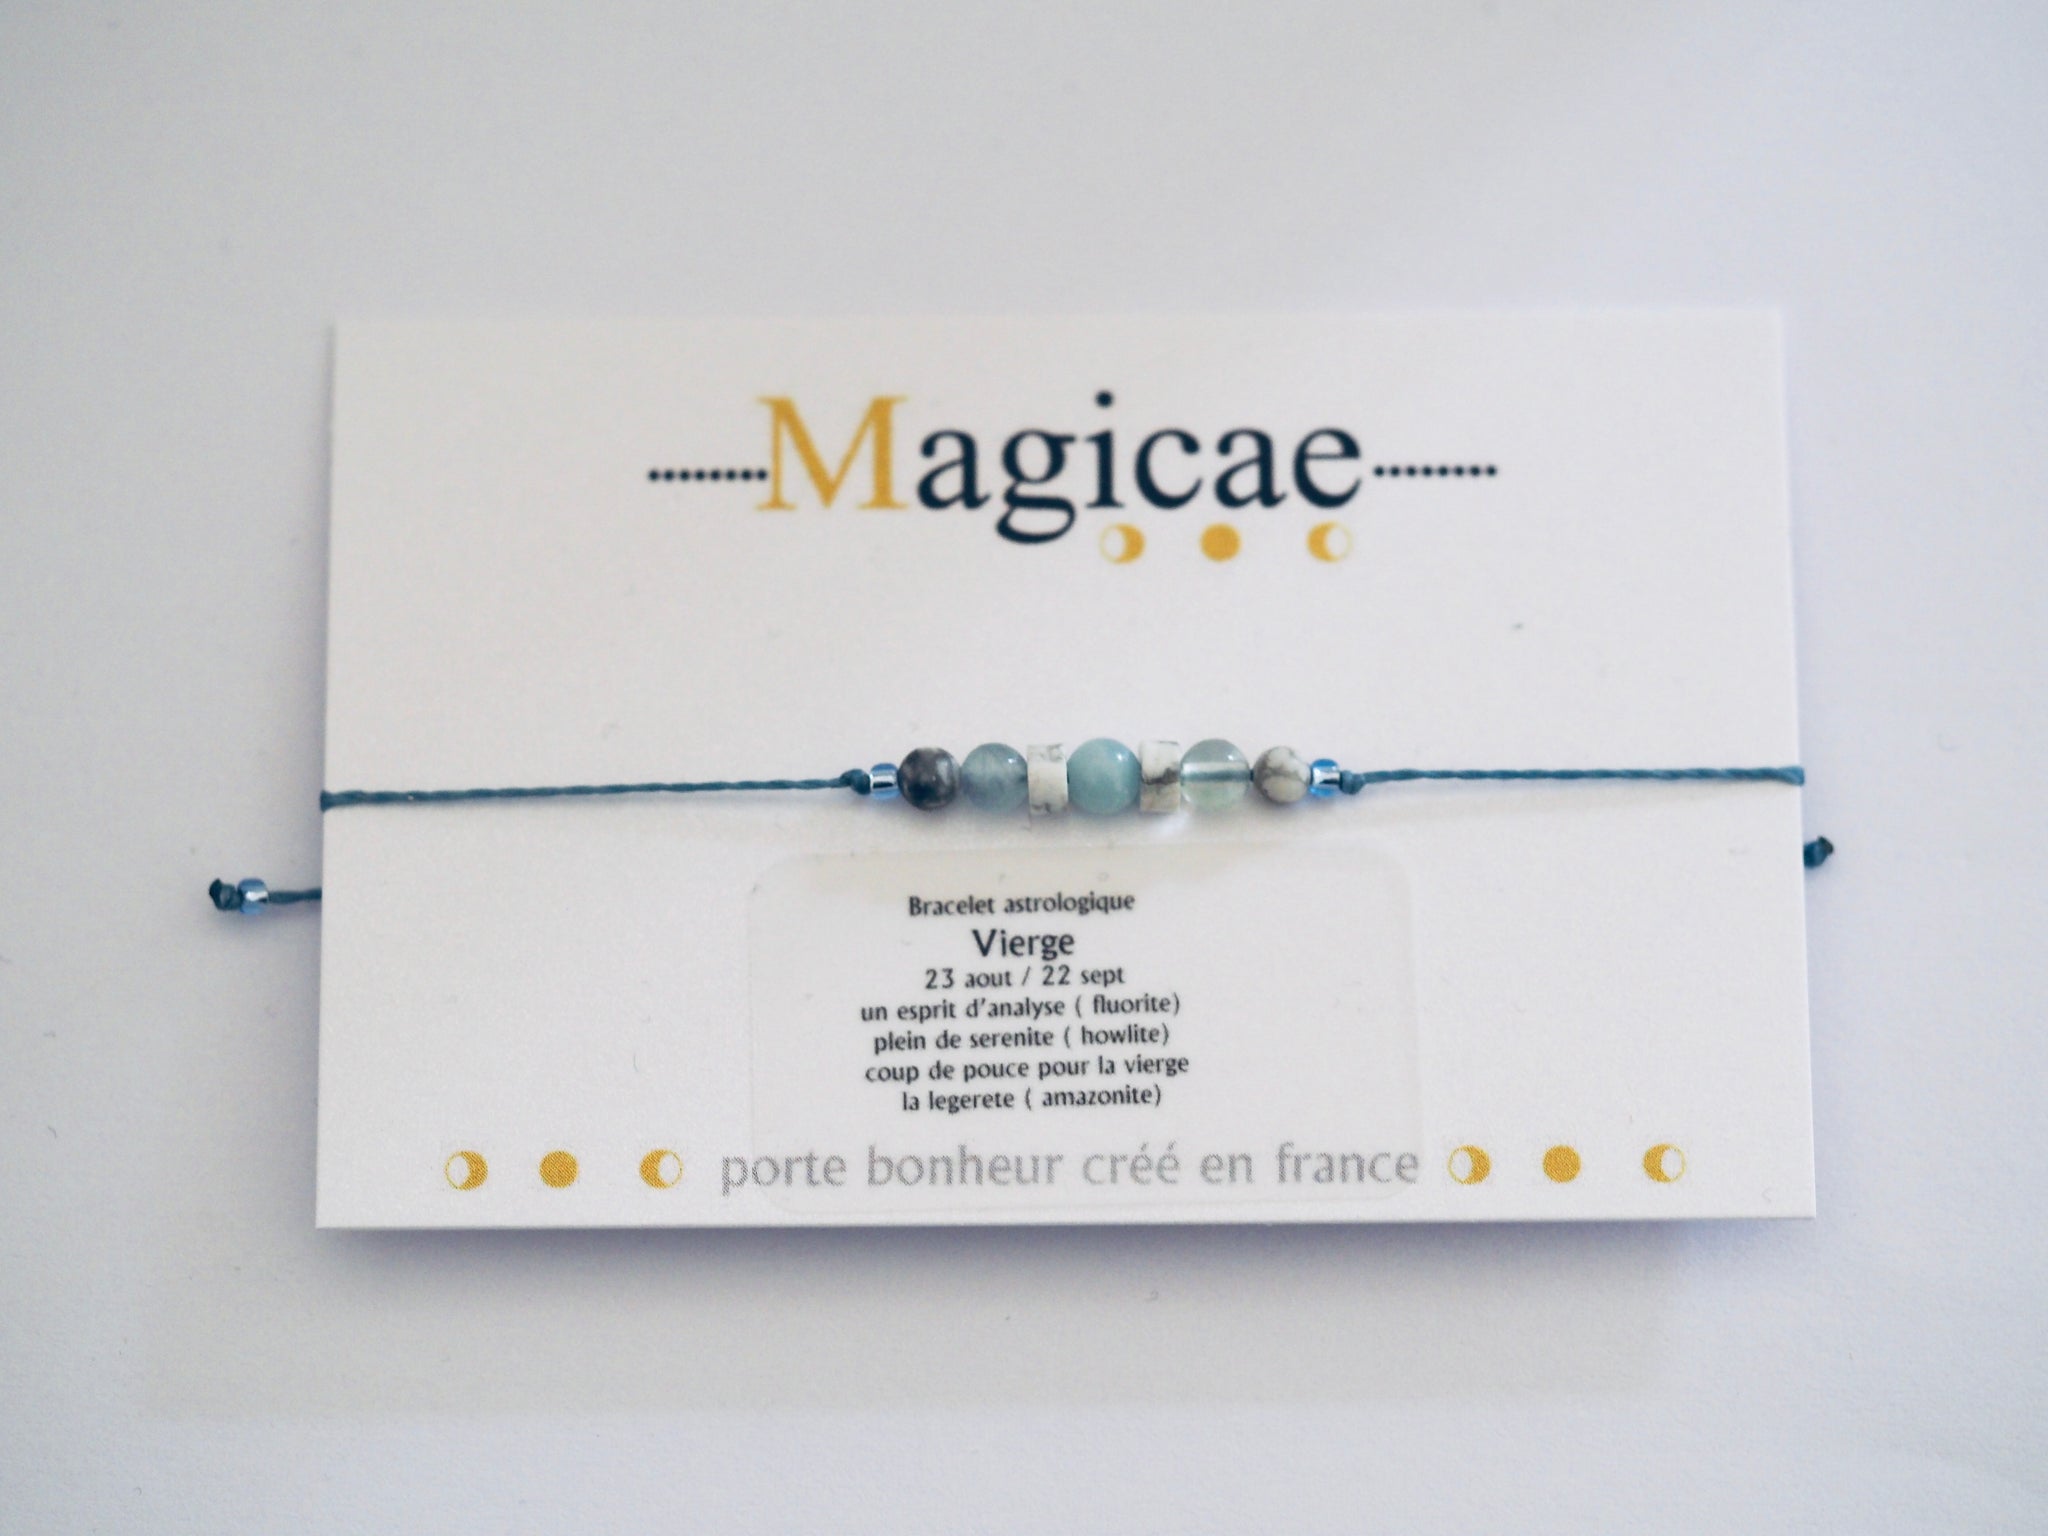 Bracelet astrologique vierge - Magicae